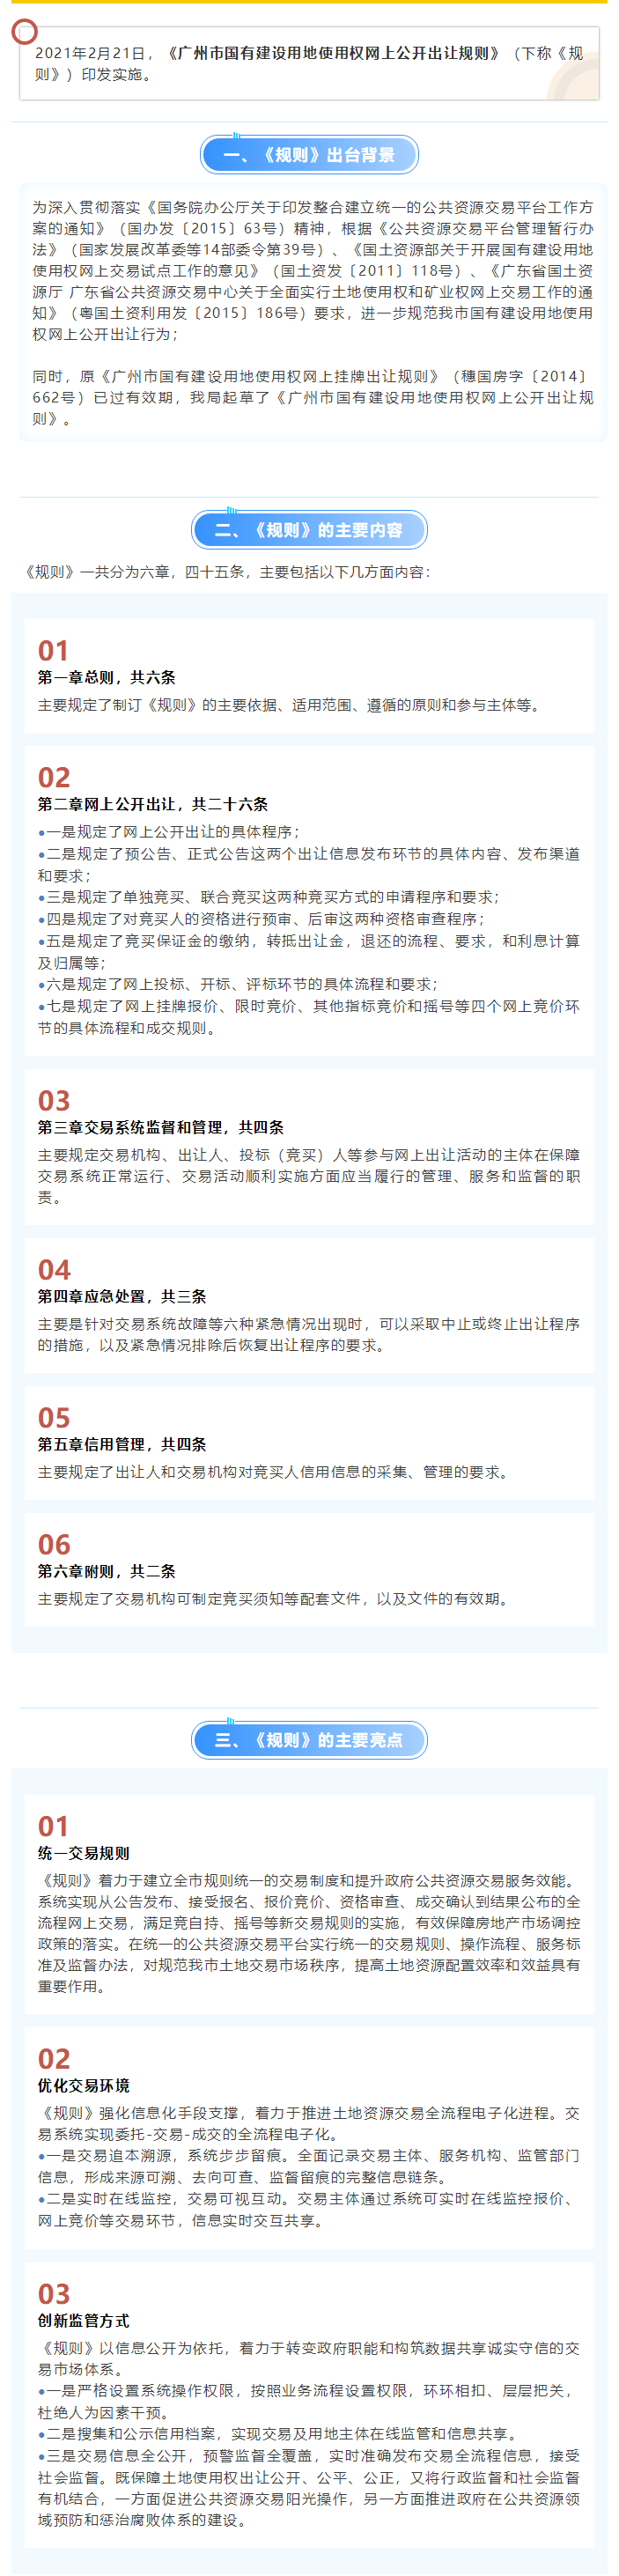 政策解读 _《广州市国有建设用地使用权网上公开出让规则》.png